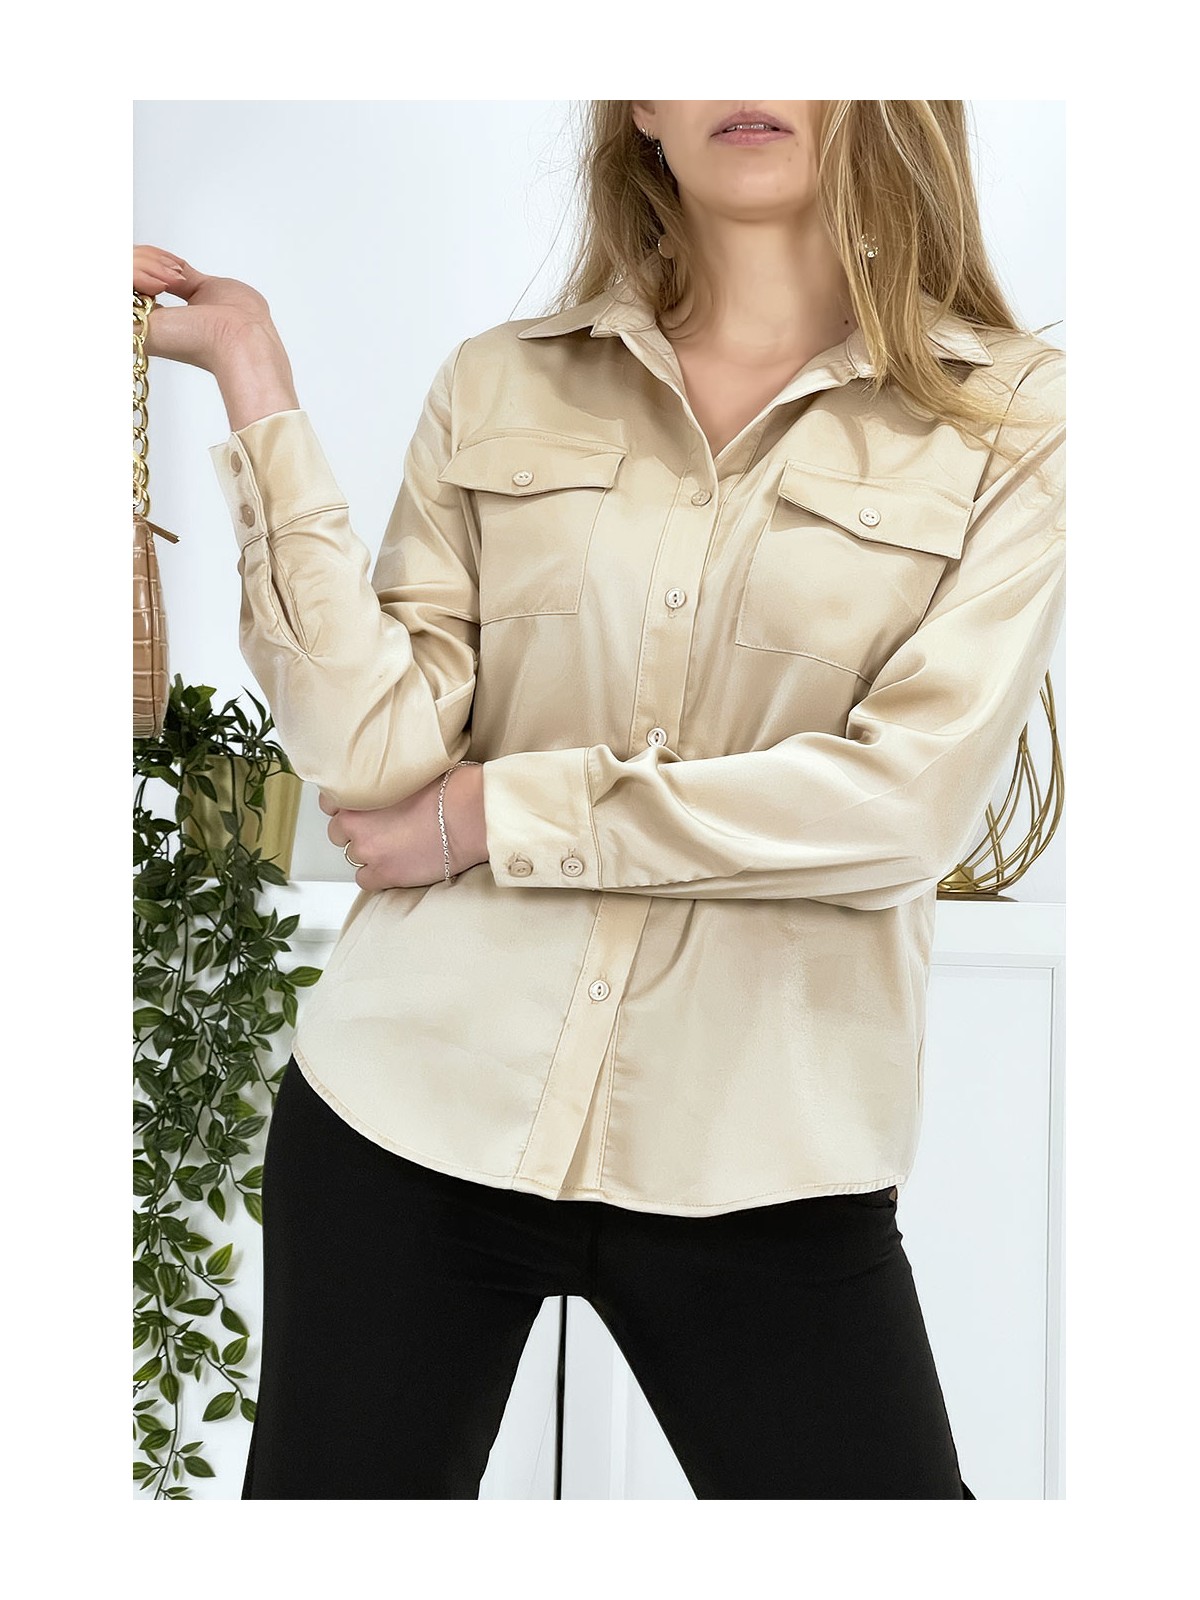 Chemise beige satiné pour femme avec poches - 8